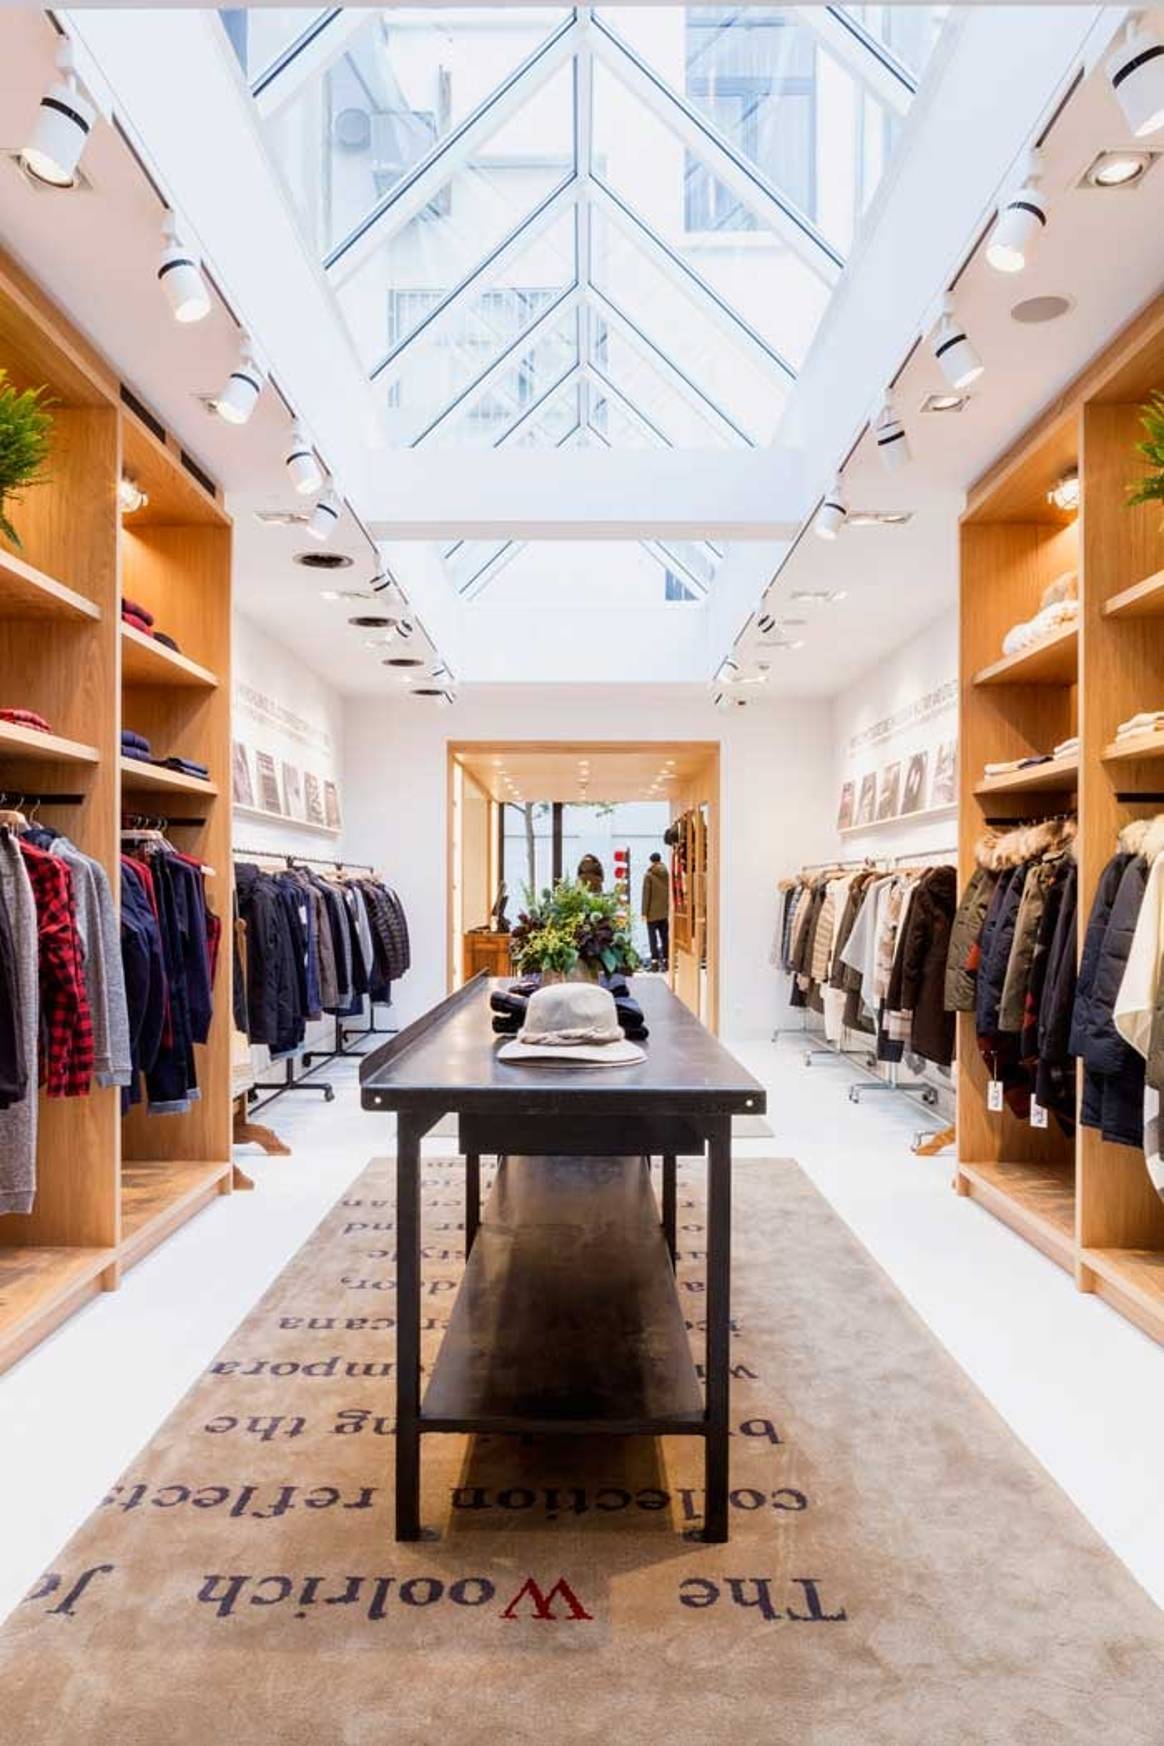 Woolrich opent eerste flagshipstore in België